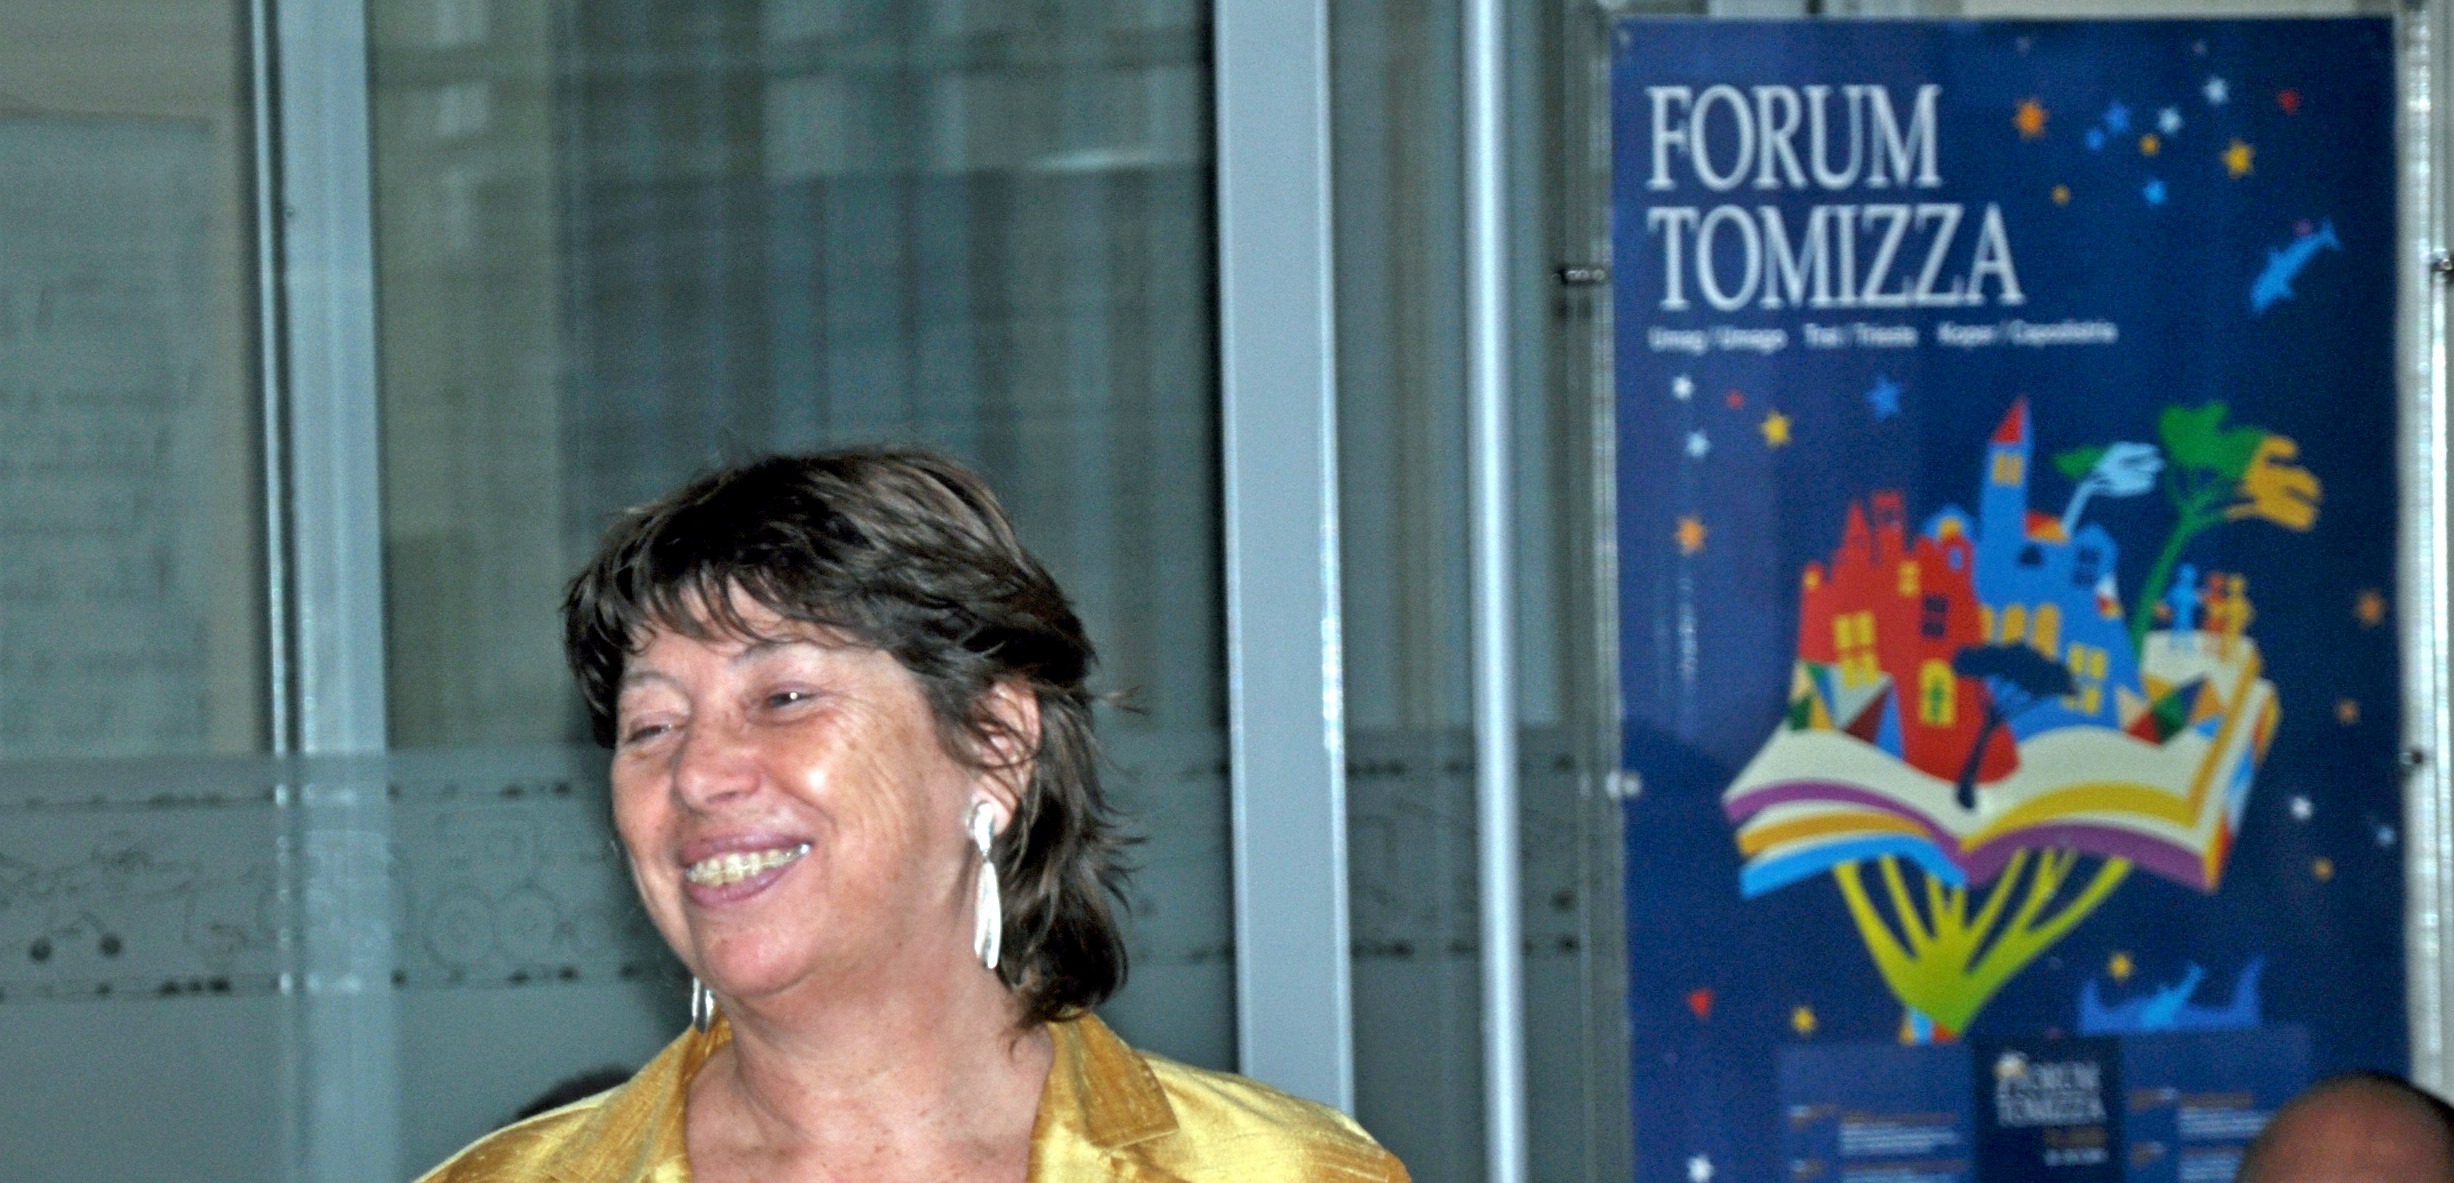 Patrizia Vascotto (1955-2018), ključni človek Foruma Tomizza v Trstu